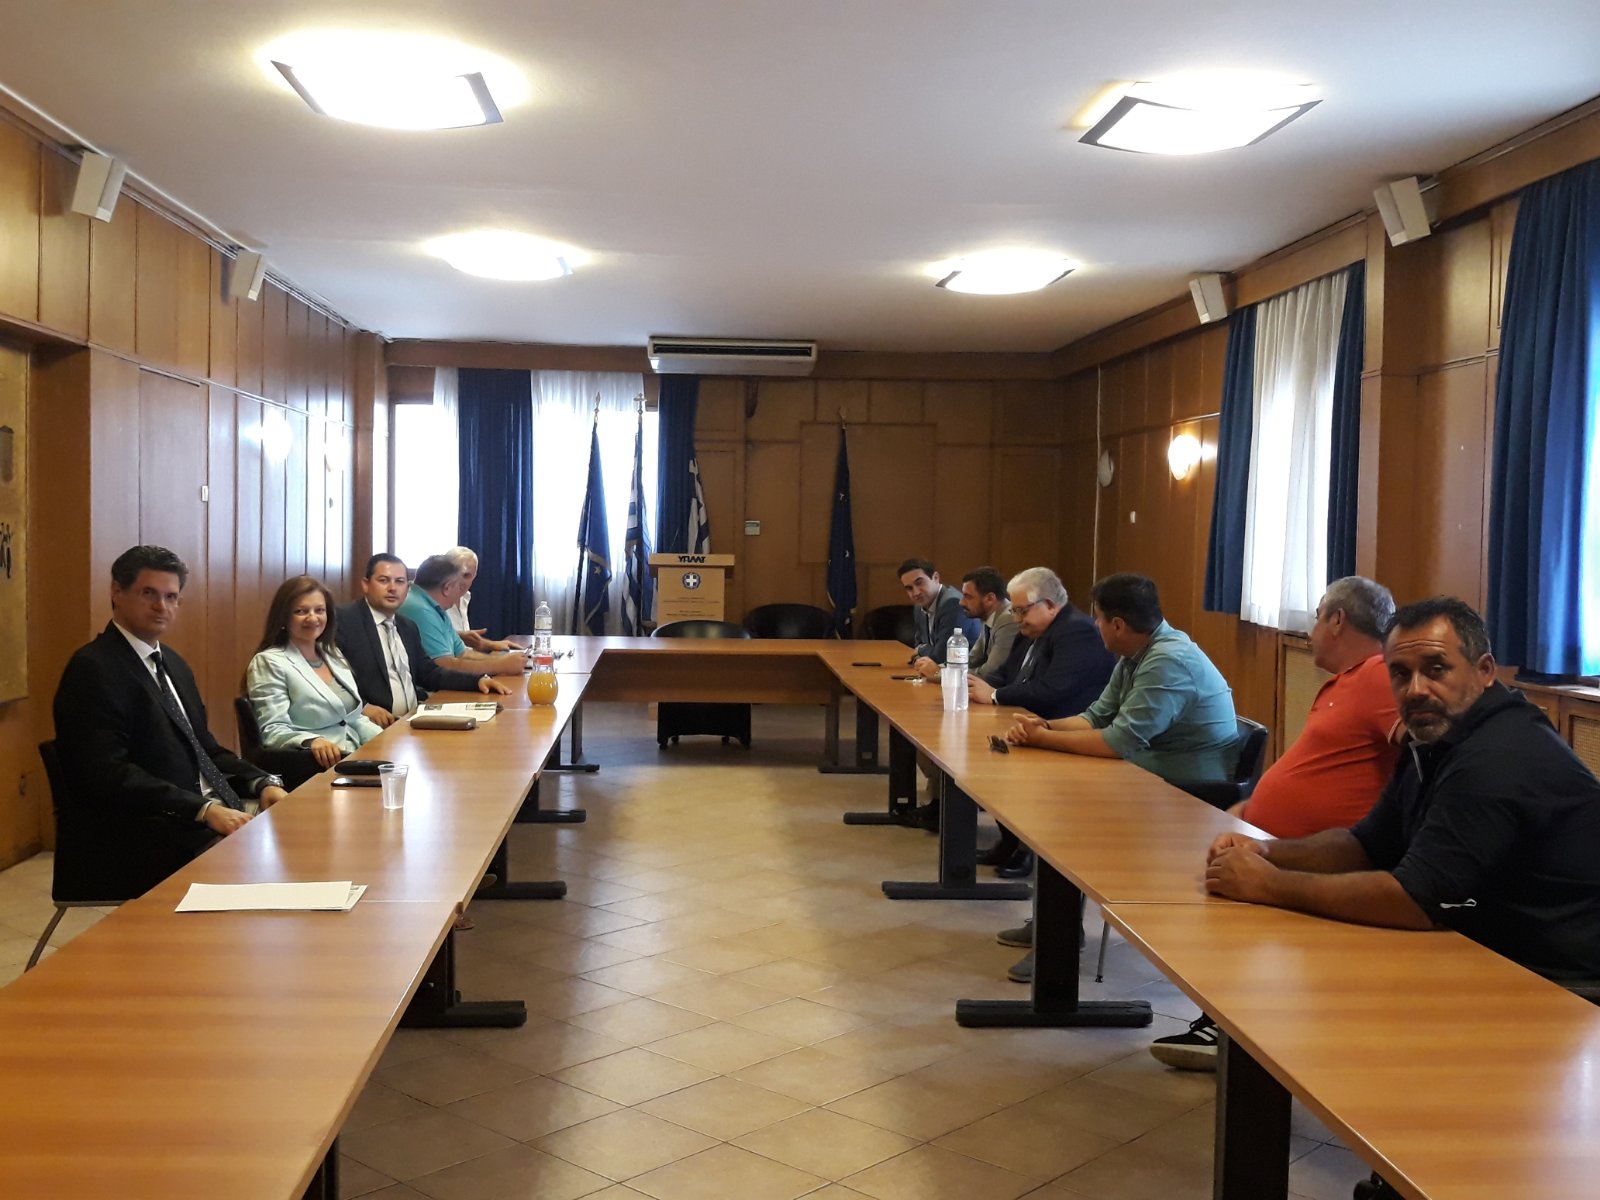 Αυγερινοπούλου: Όσοι αγρότες ζημιώθηκαν από τον COVID θα αποζημιωθούν! - Θετικά τα αποτελέσματα της συνάντησης αγροτών Ν. Ηλείας, Βουλευτών και Αντιπεριφερειάρχη με Βορίδη